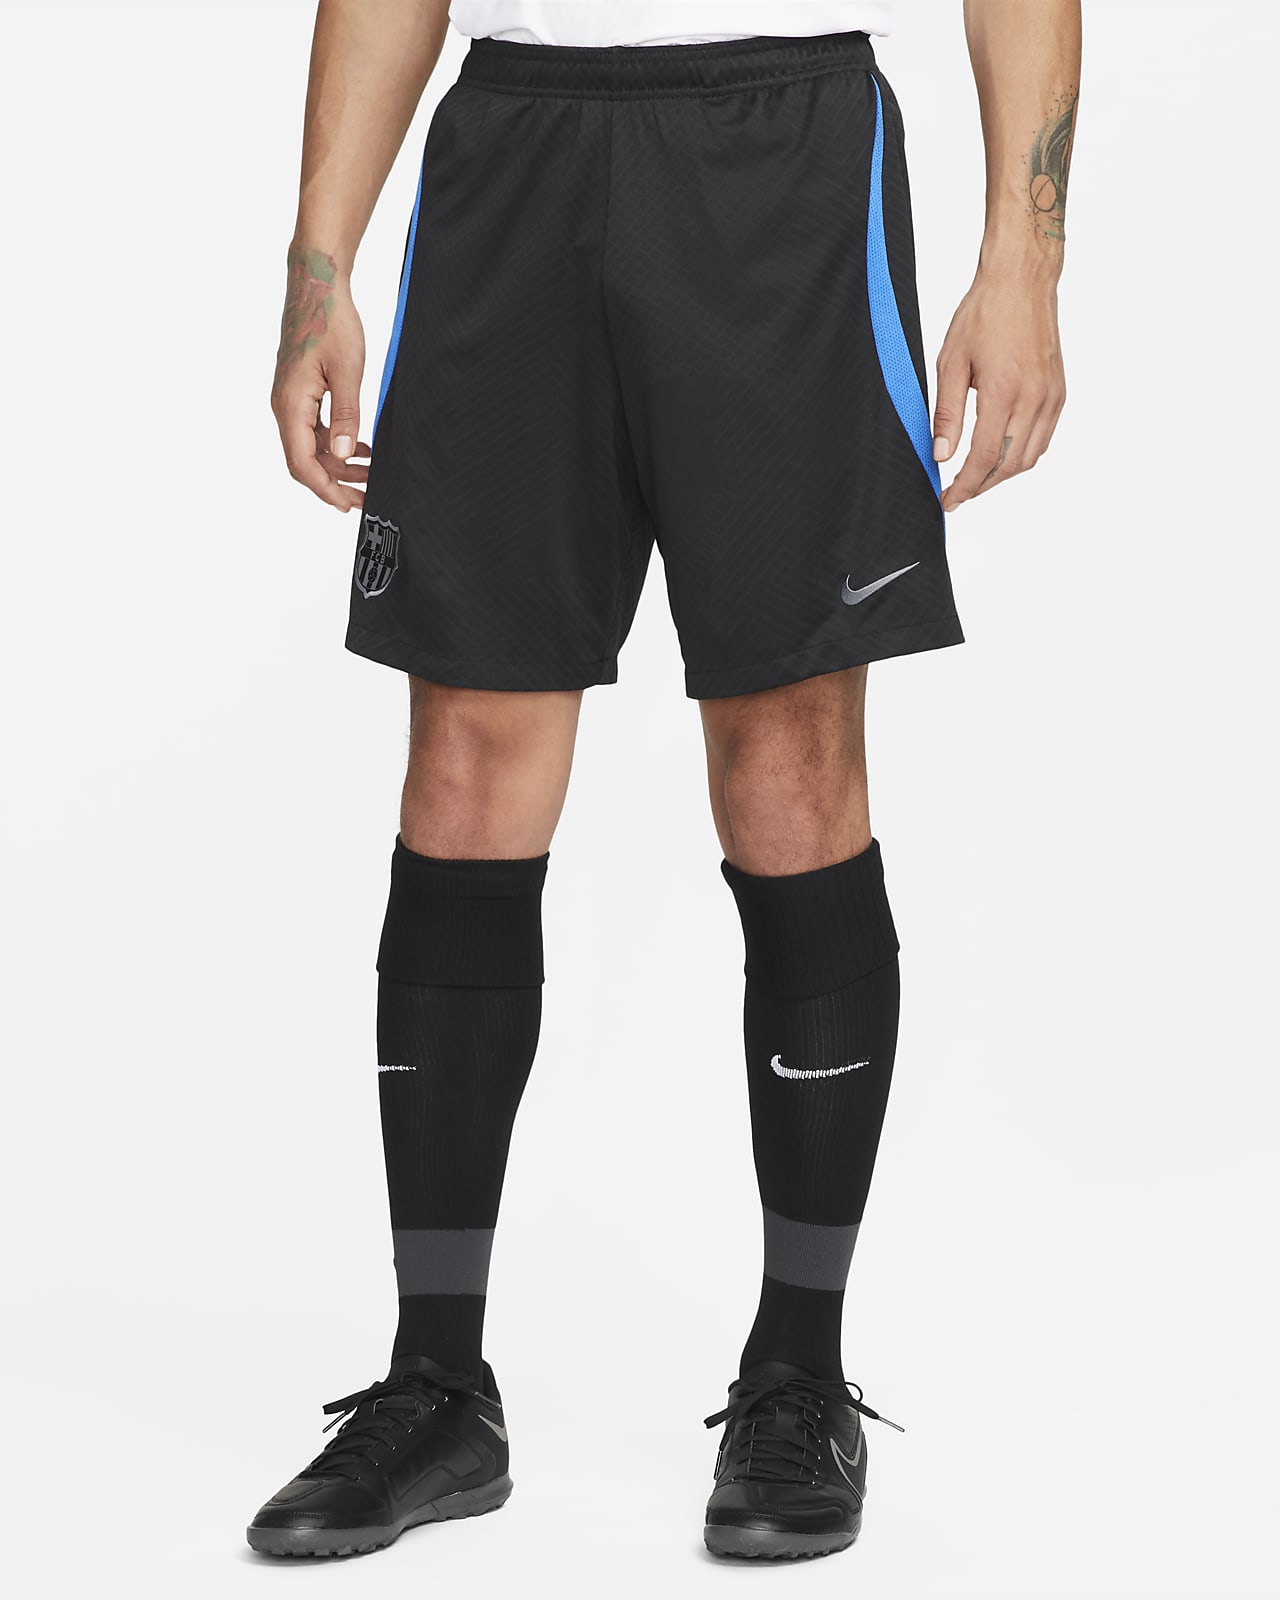 FC Barcelona Men's Nike Dri-FIT Knit Soccer Shorts. Nike.com